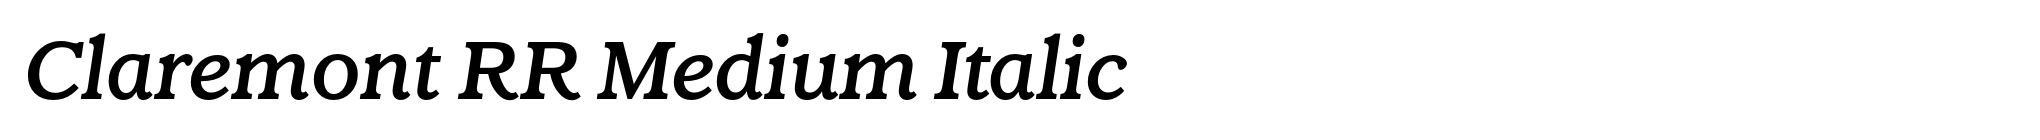 Claremont RR Medium Italic image